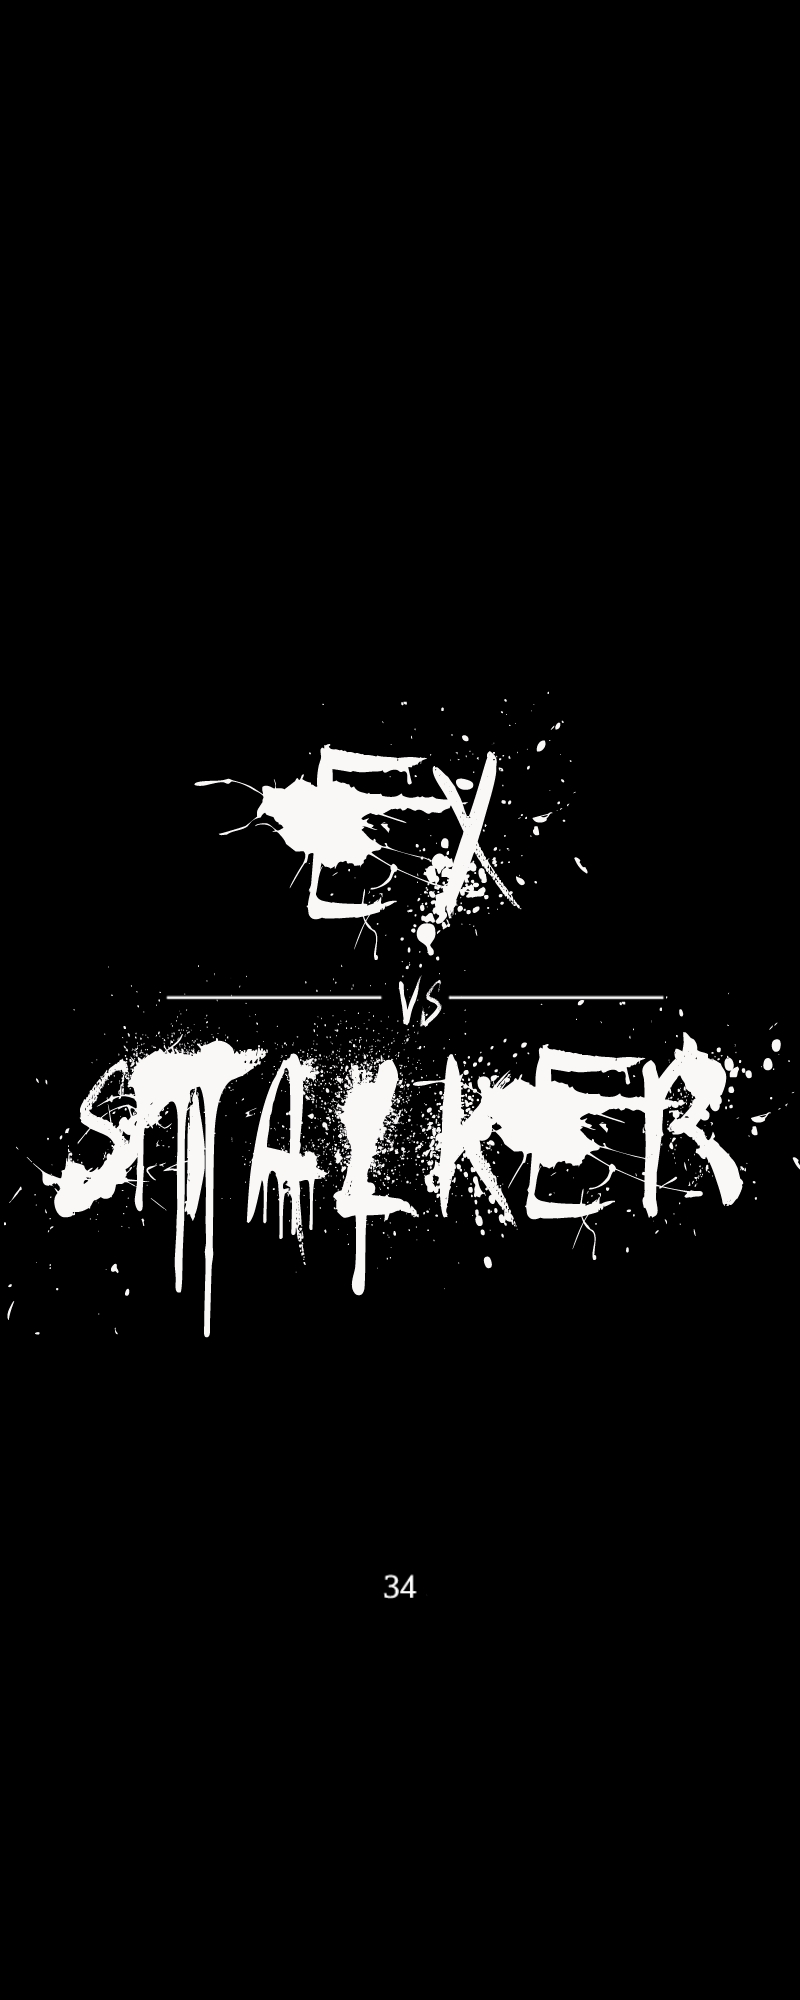 Ex vs. Stalker 34